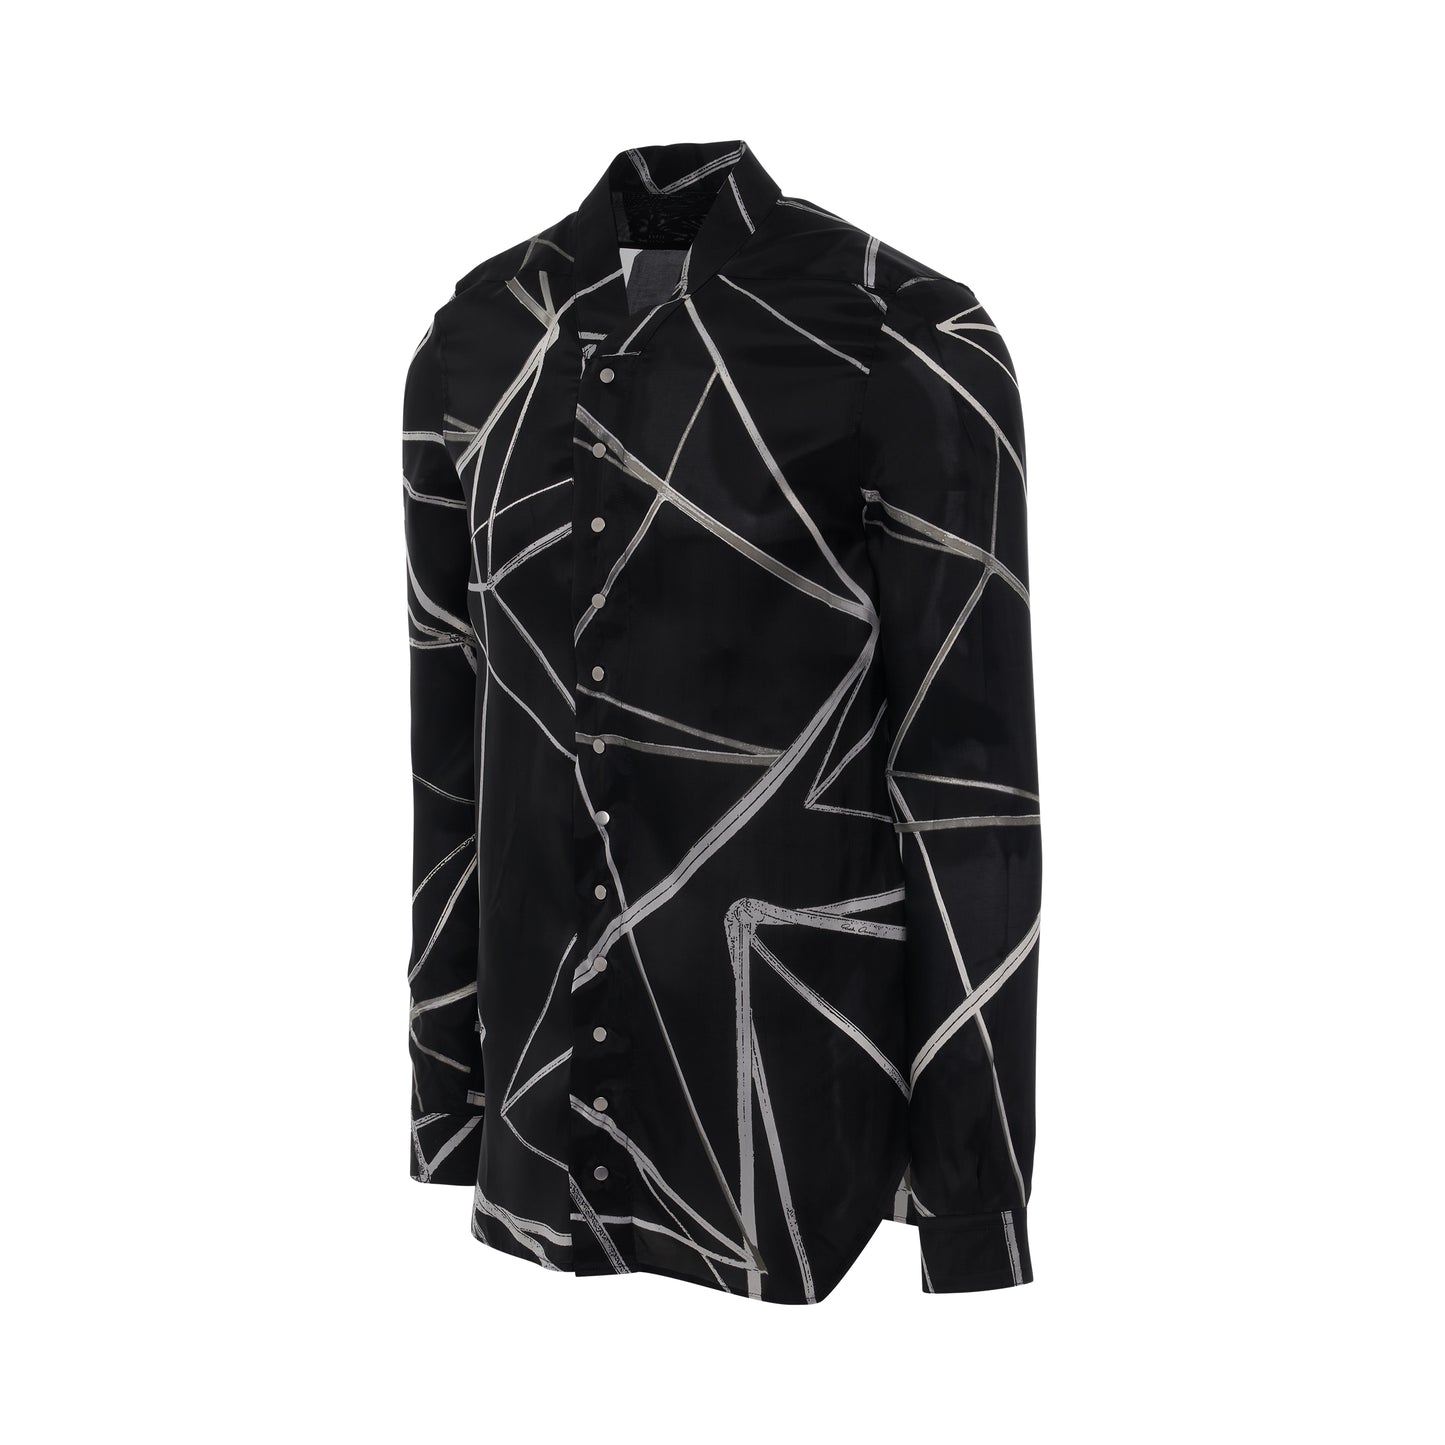 Snap Collar Faun Shirt in Black/Natural